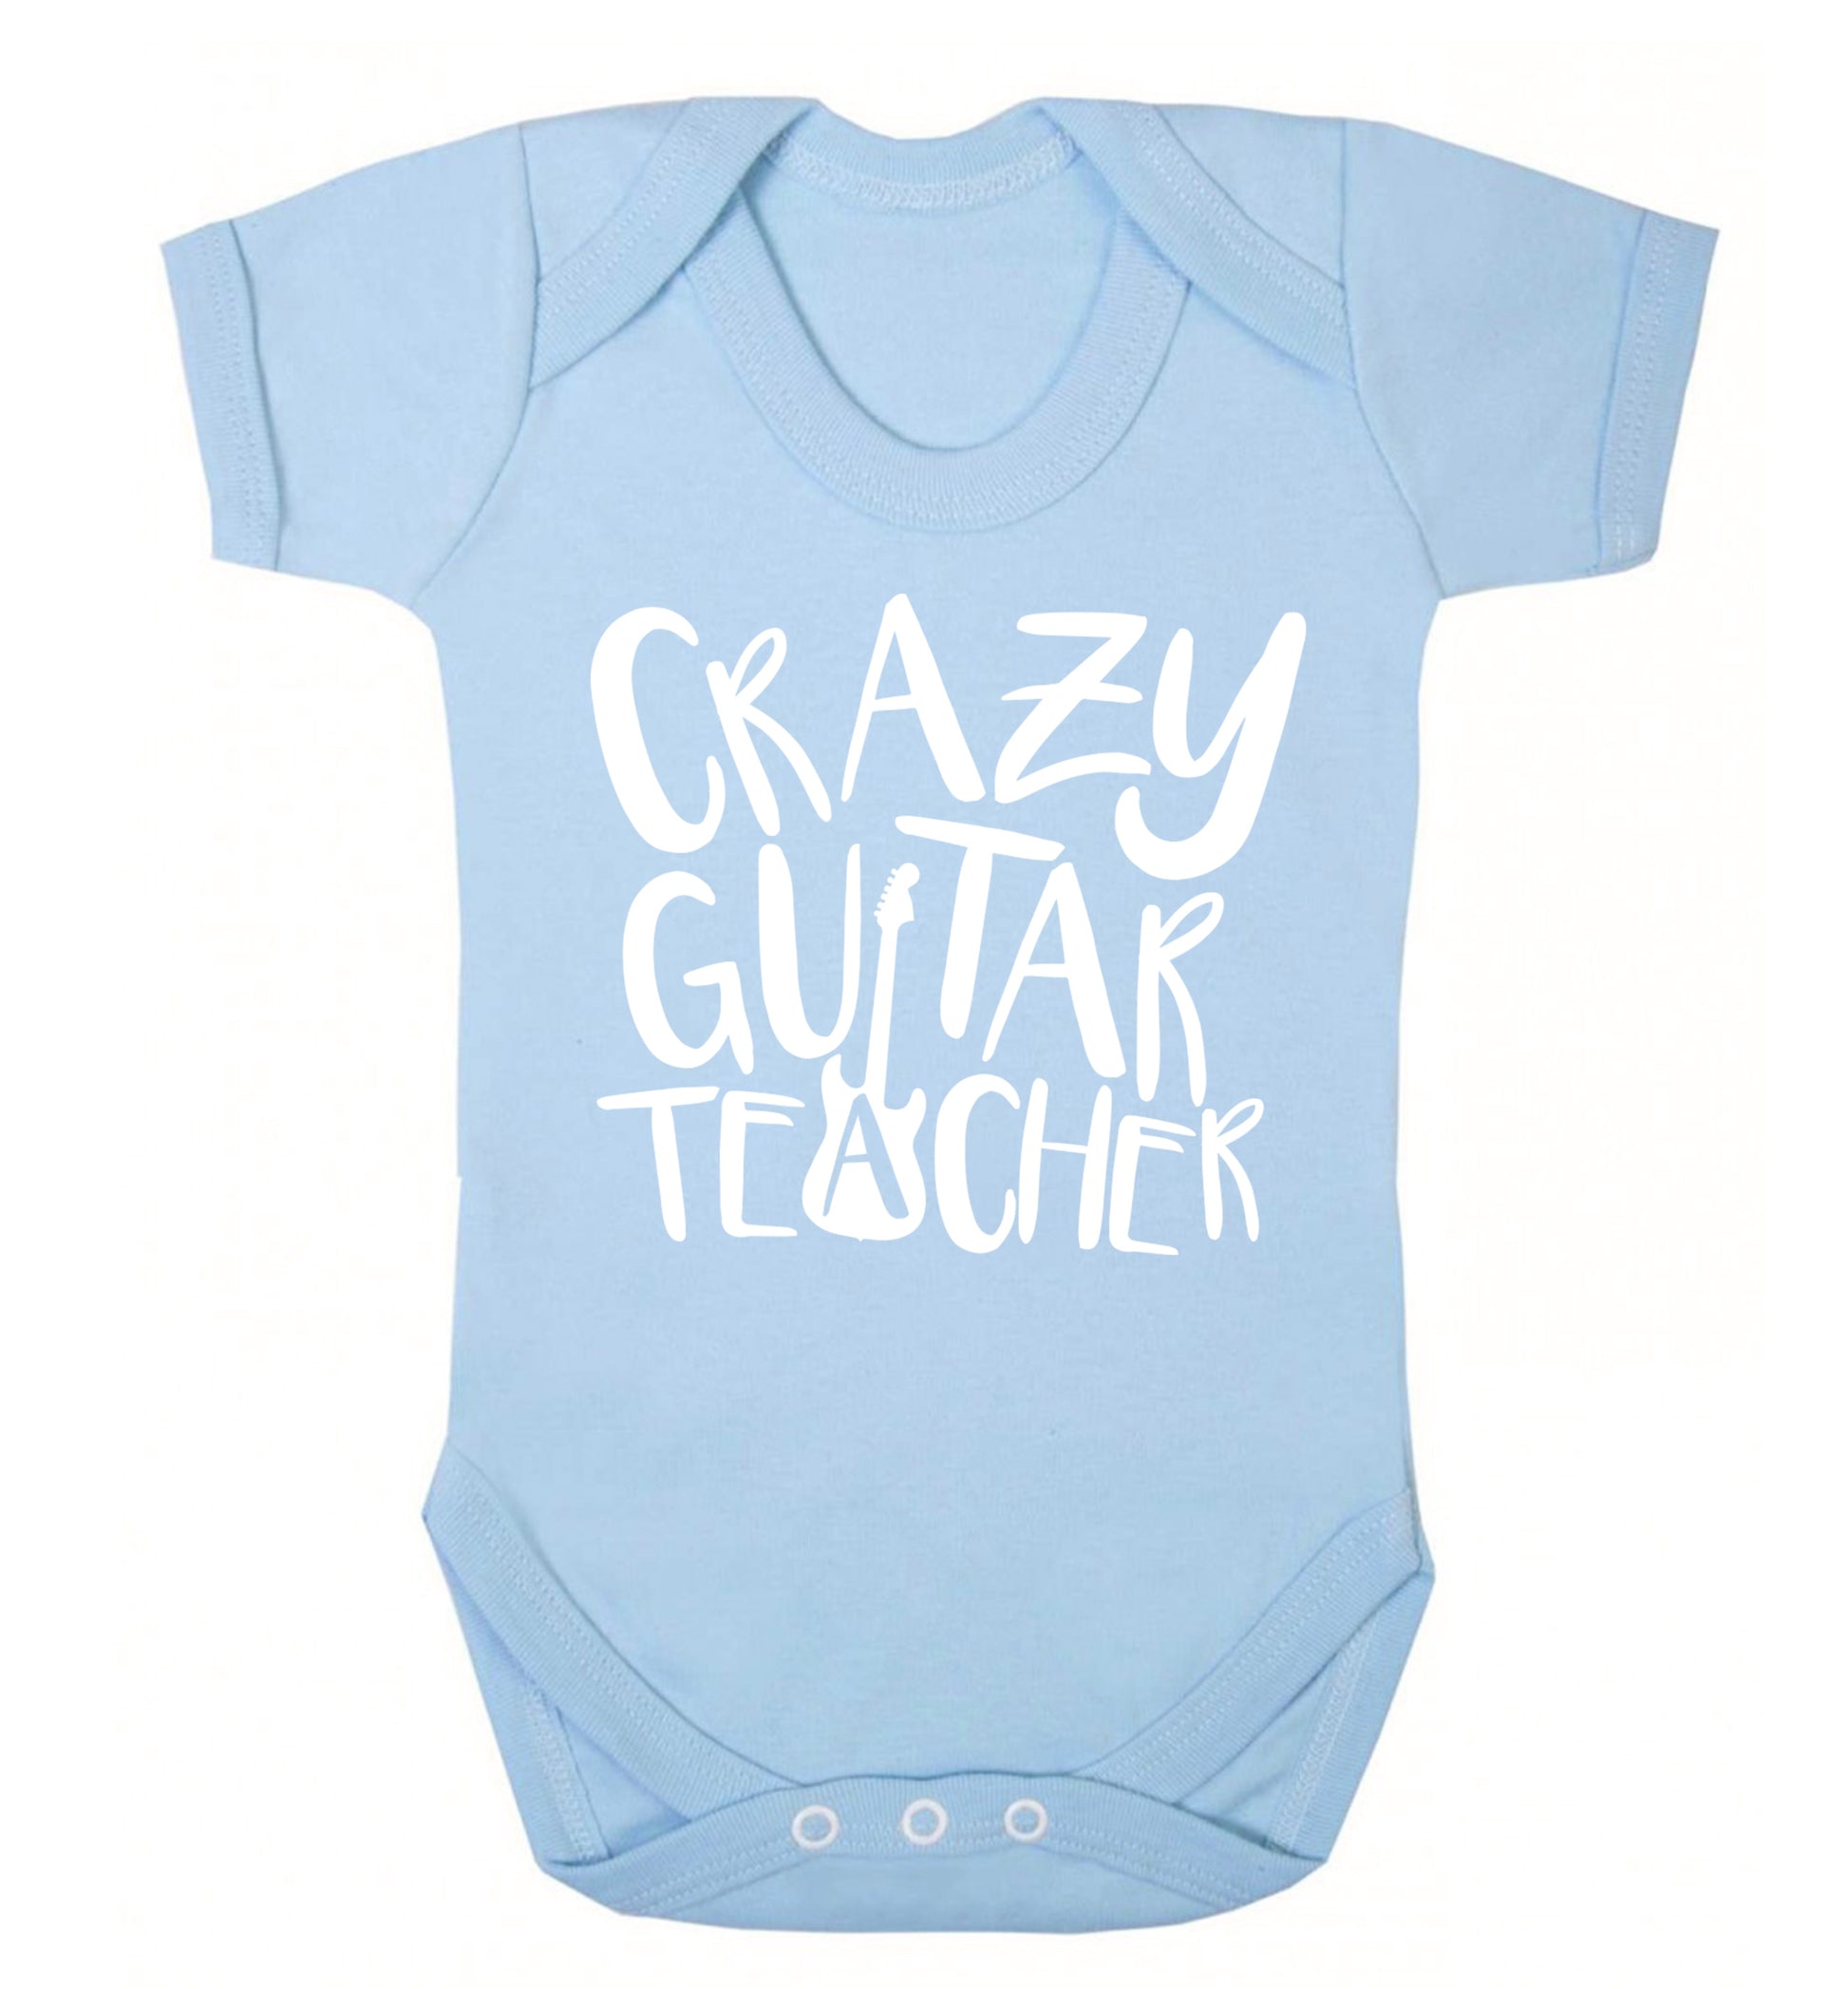 Crazy guitar teacher Baby Vest pale blue 18-24 months